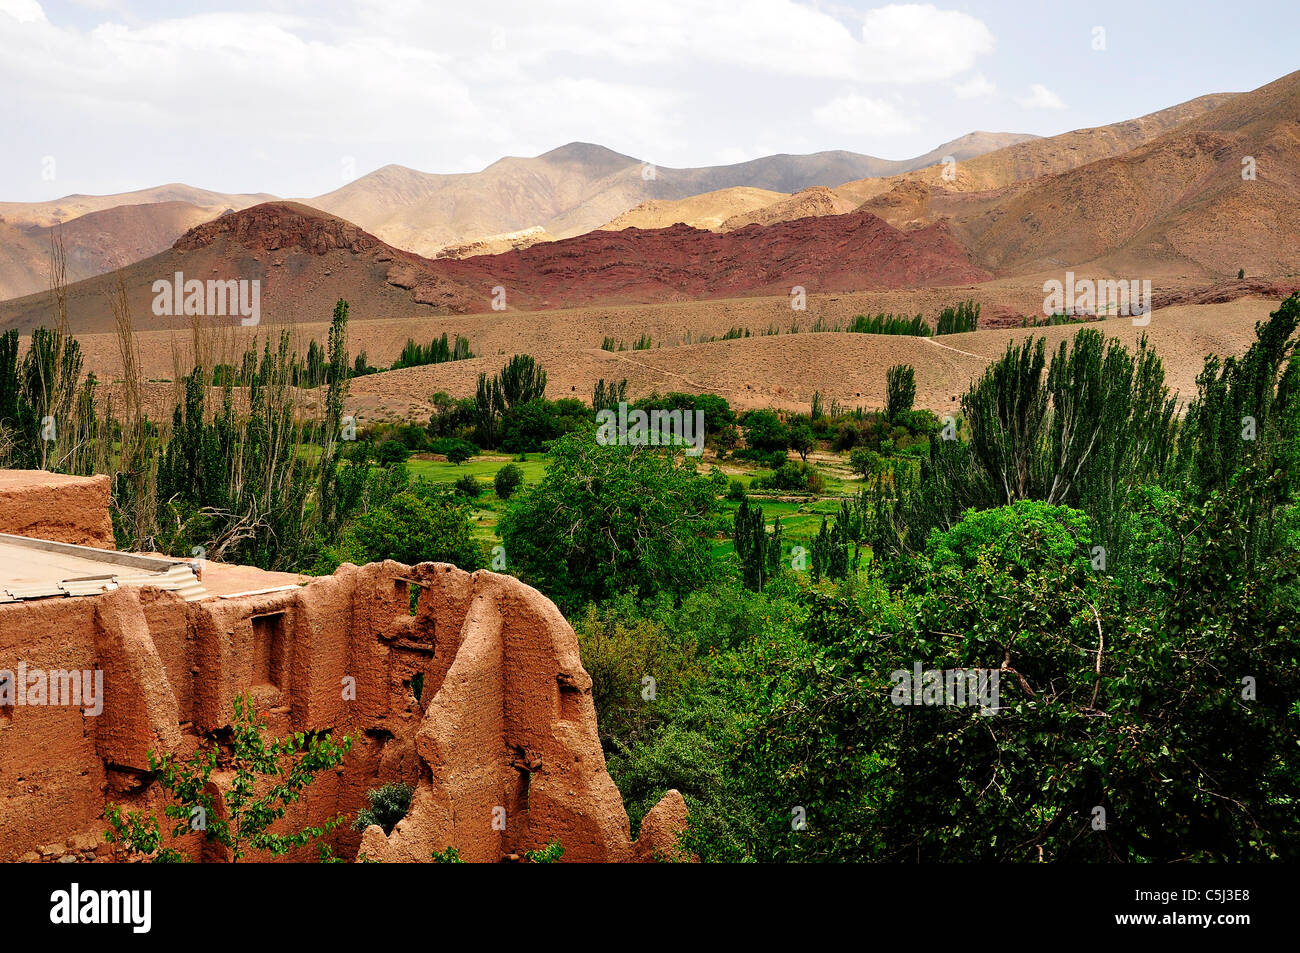 La ruine d'un bâtiment abandonné adobe et paysage de montagne en Iran. Banque D'Images